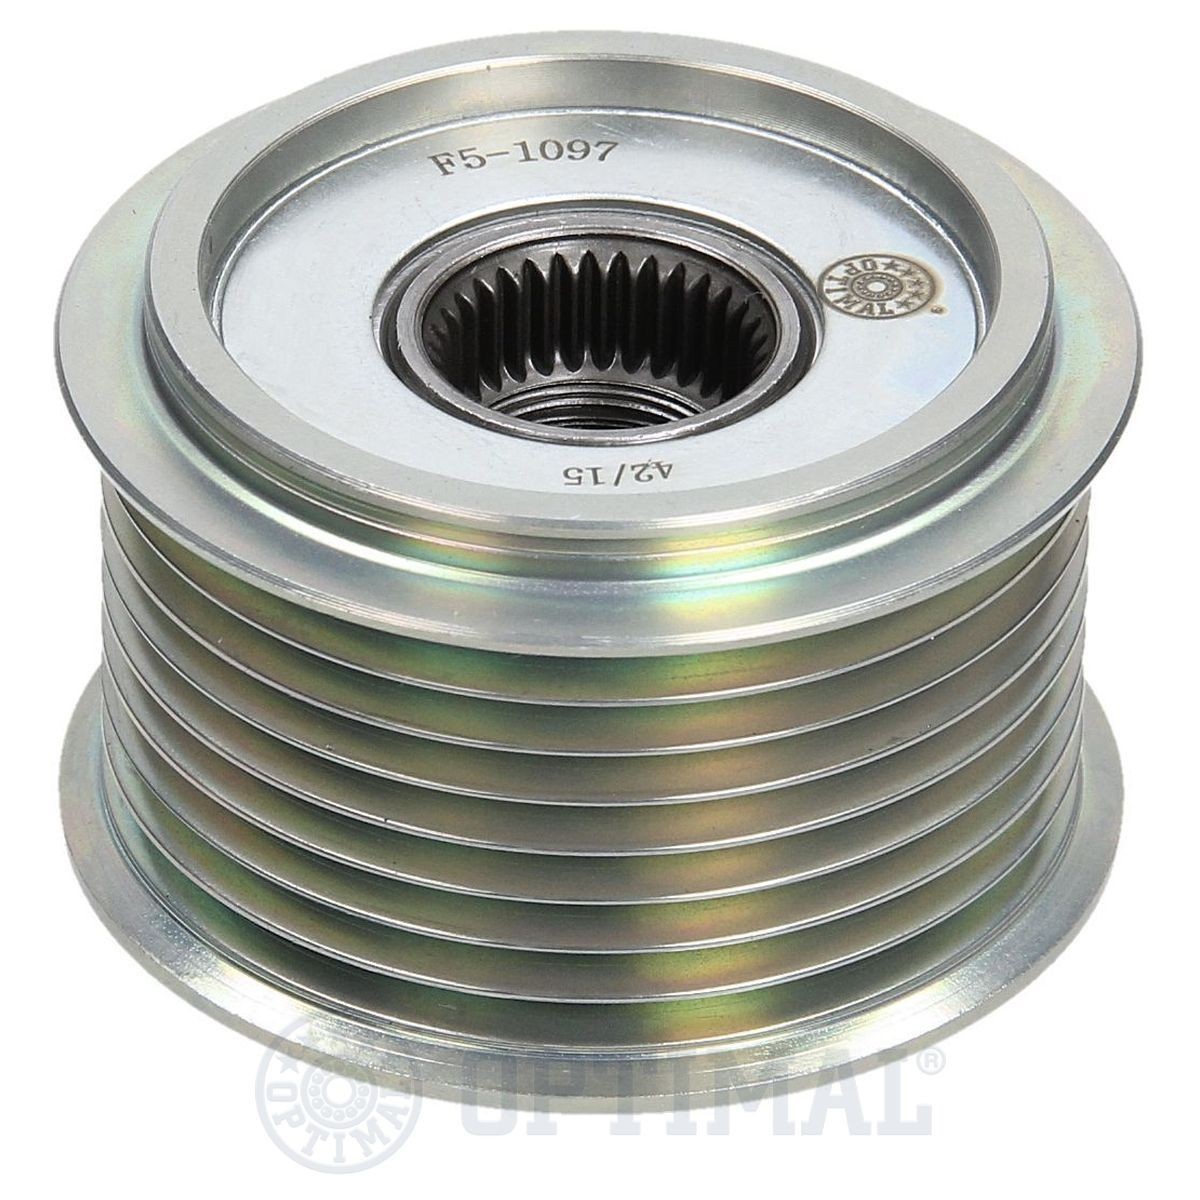 OPTIMAL Alternator Freewheel Clutch F5-1097 buy